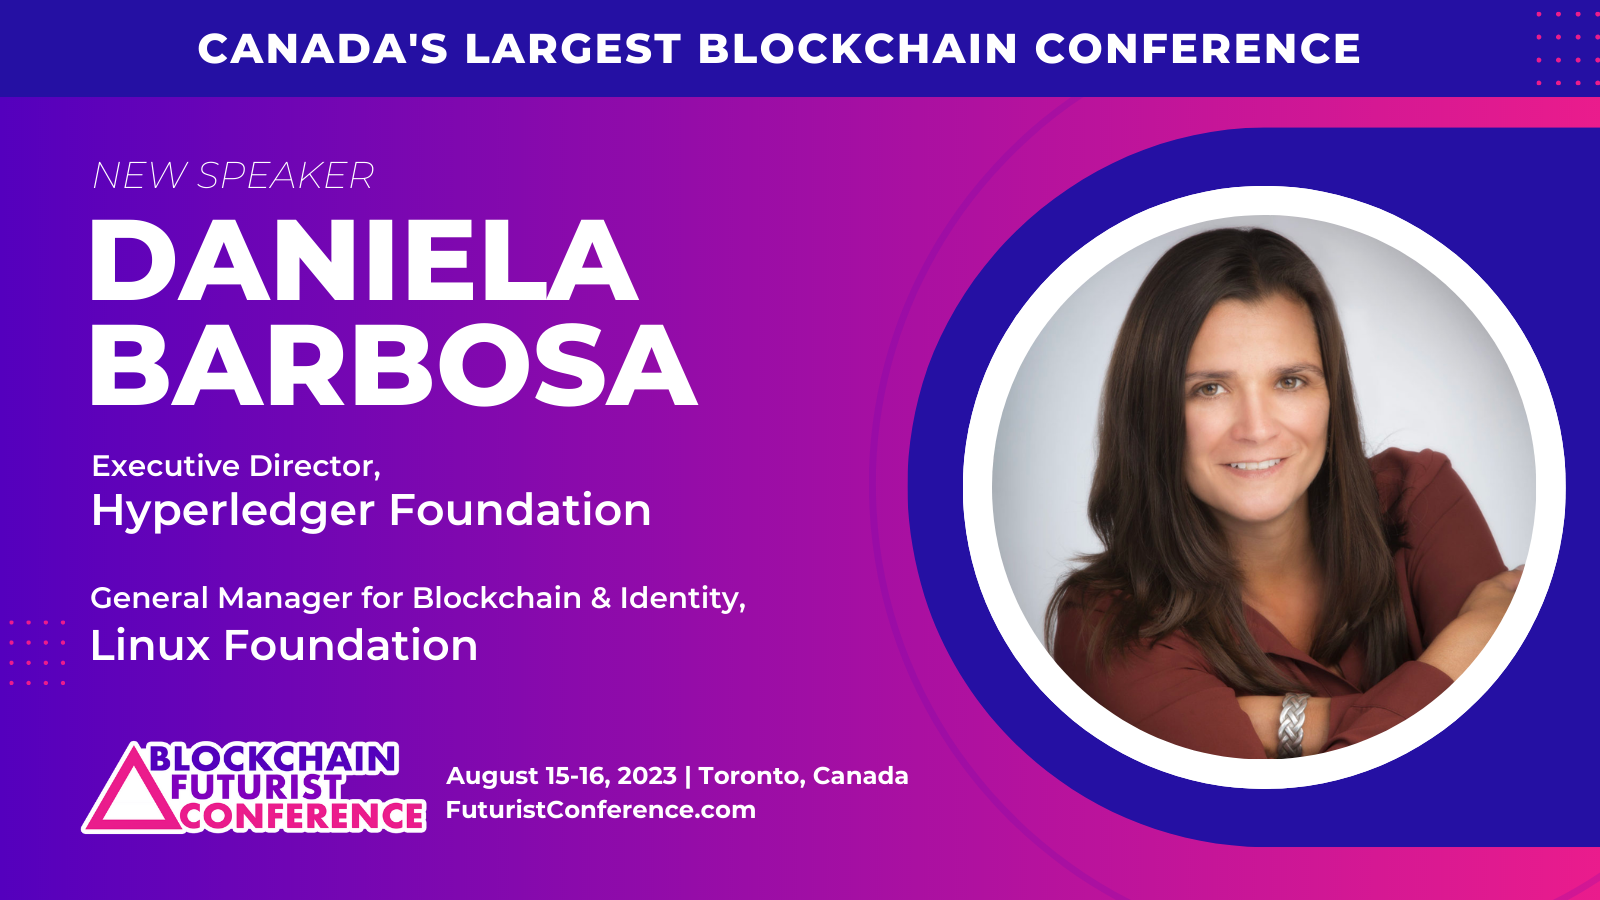 Blockchain Futurist Conference 